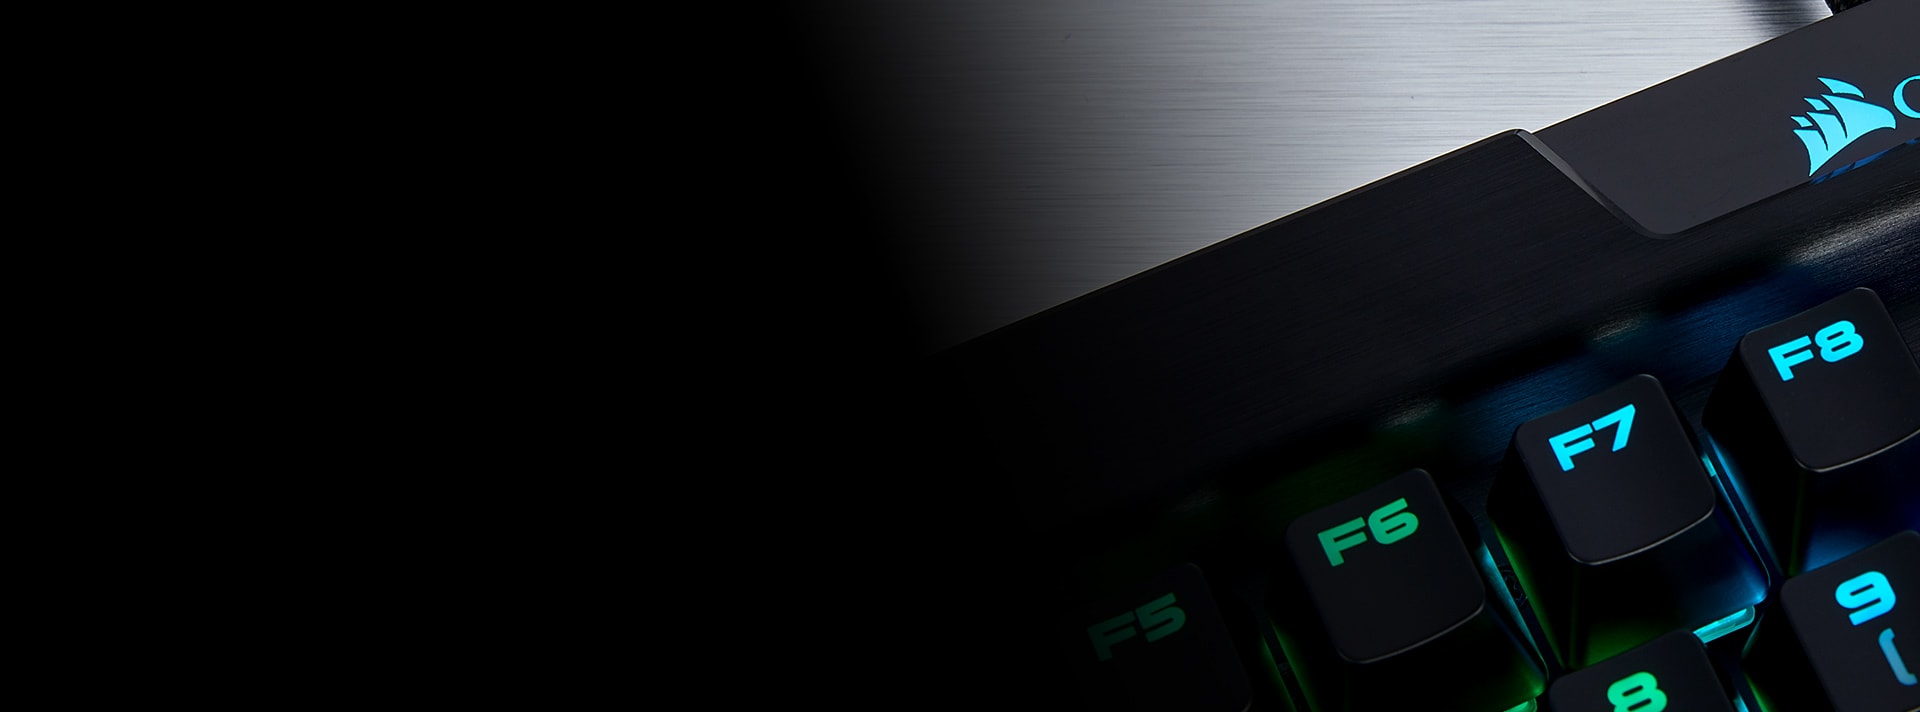 Chez Corsair, le K70 évolue et devient le K70 RGB MK.2 - Le comptoir du  hardware